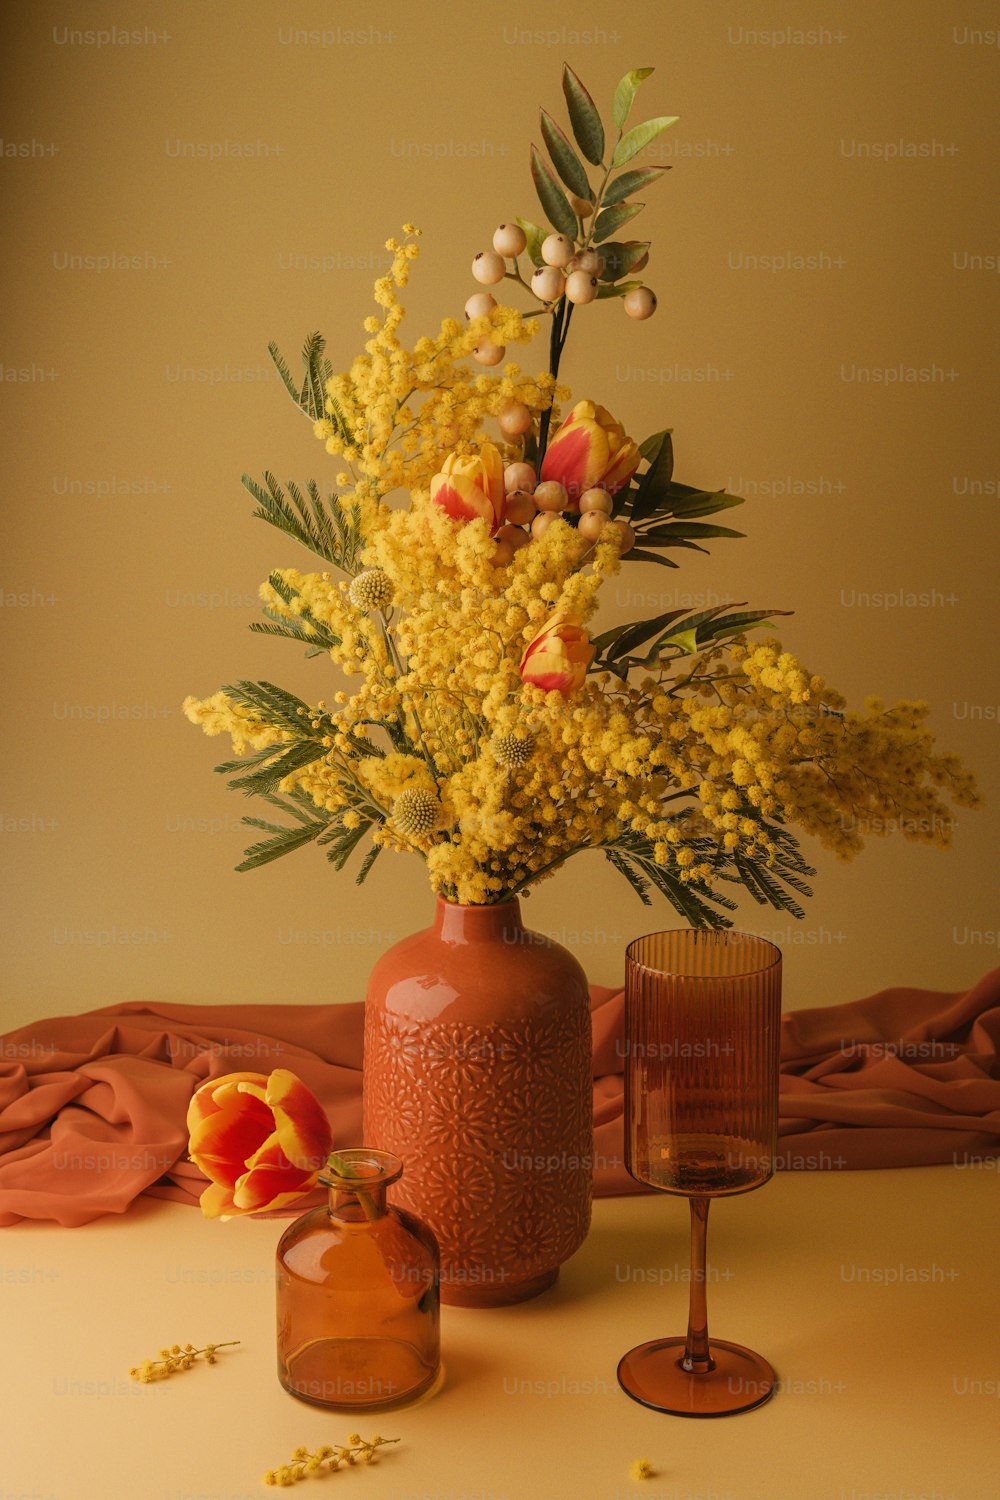 eine Vase gefüllt mit gelben Blumen neben einem Weinglas